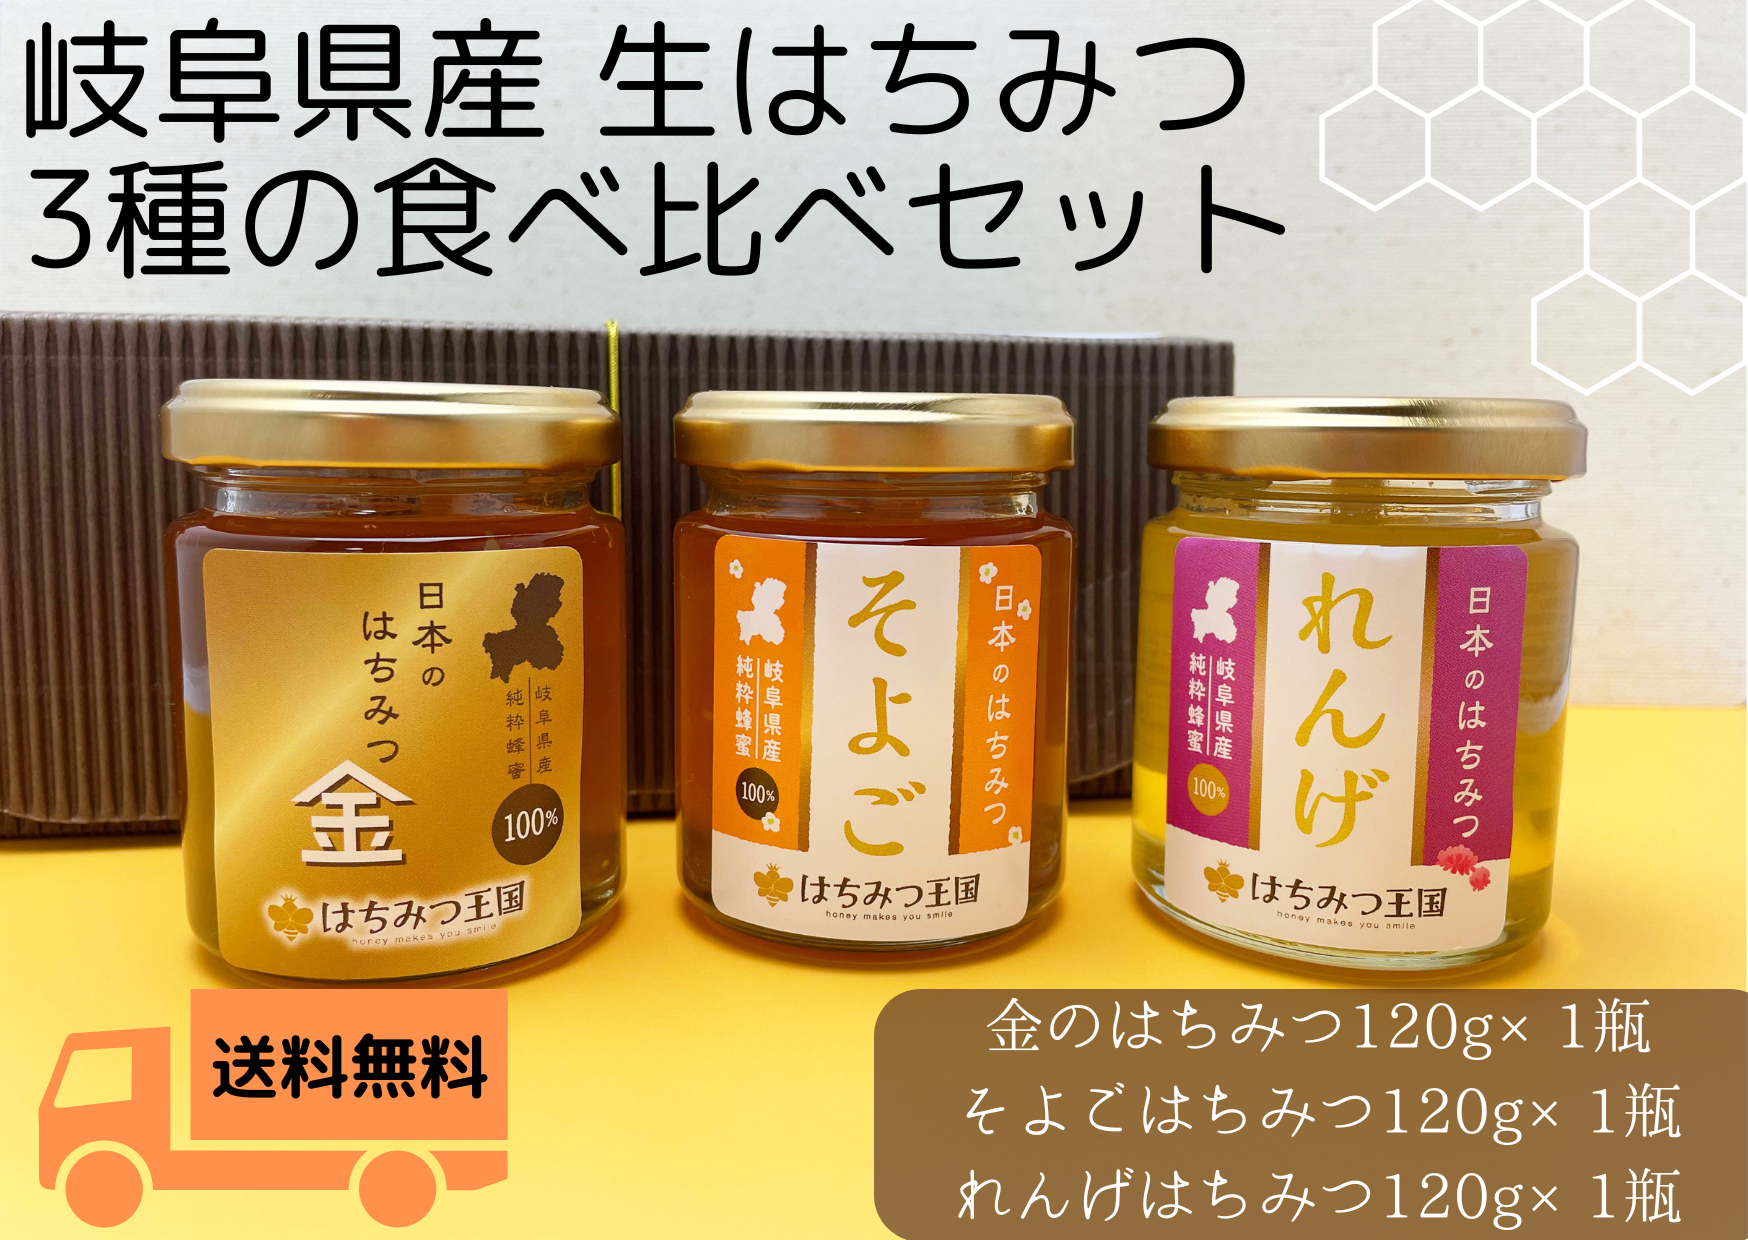 【新商品】岐阜県産3種のはちみつを食べ比べ【送料無料】